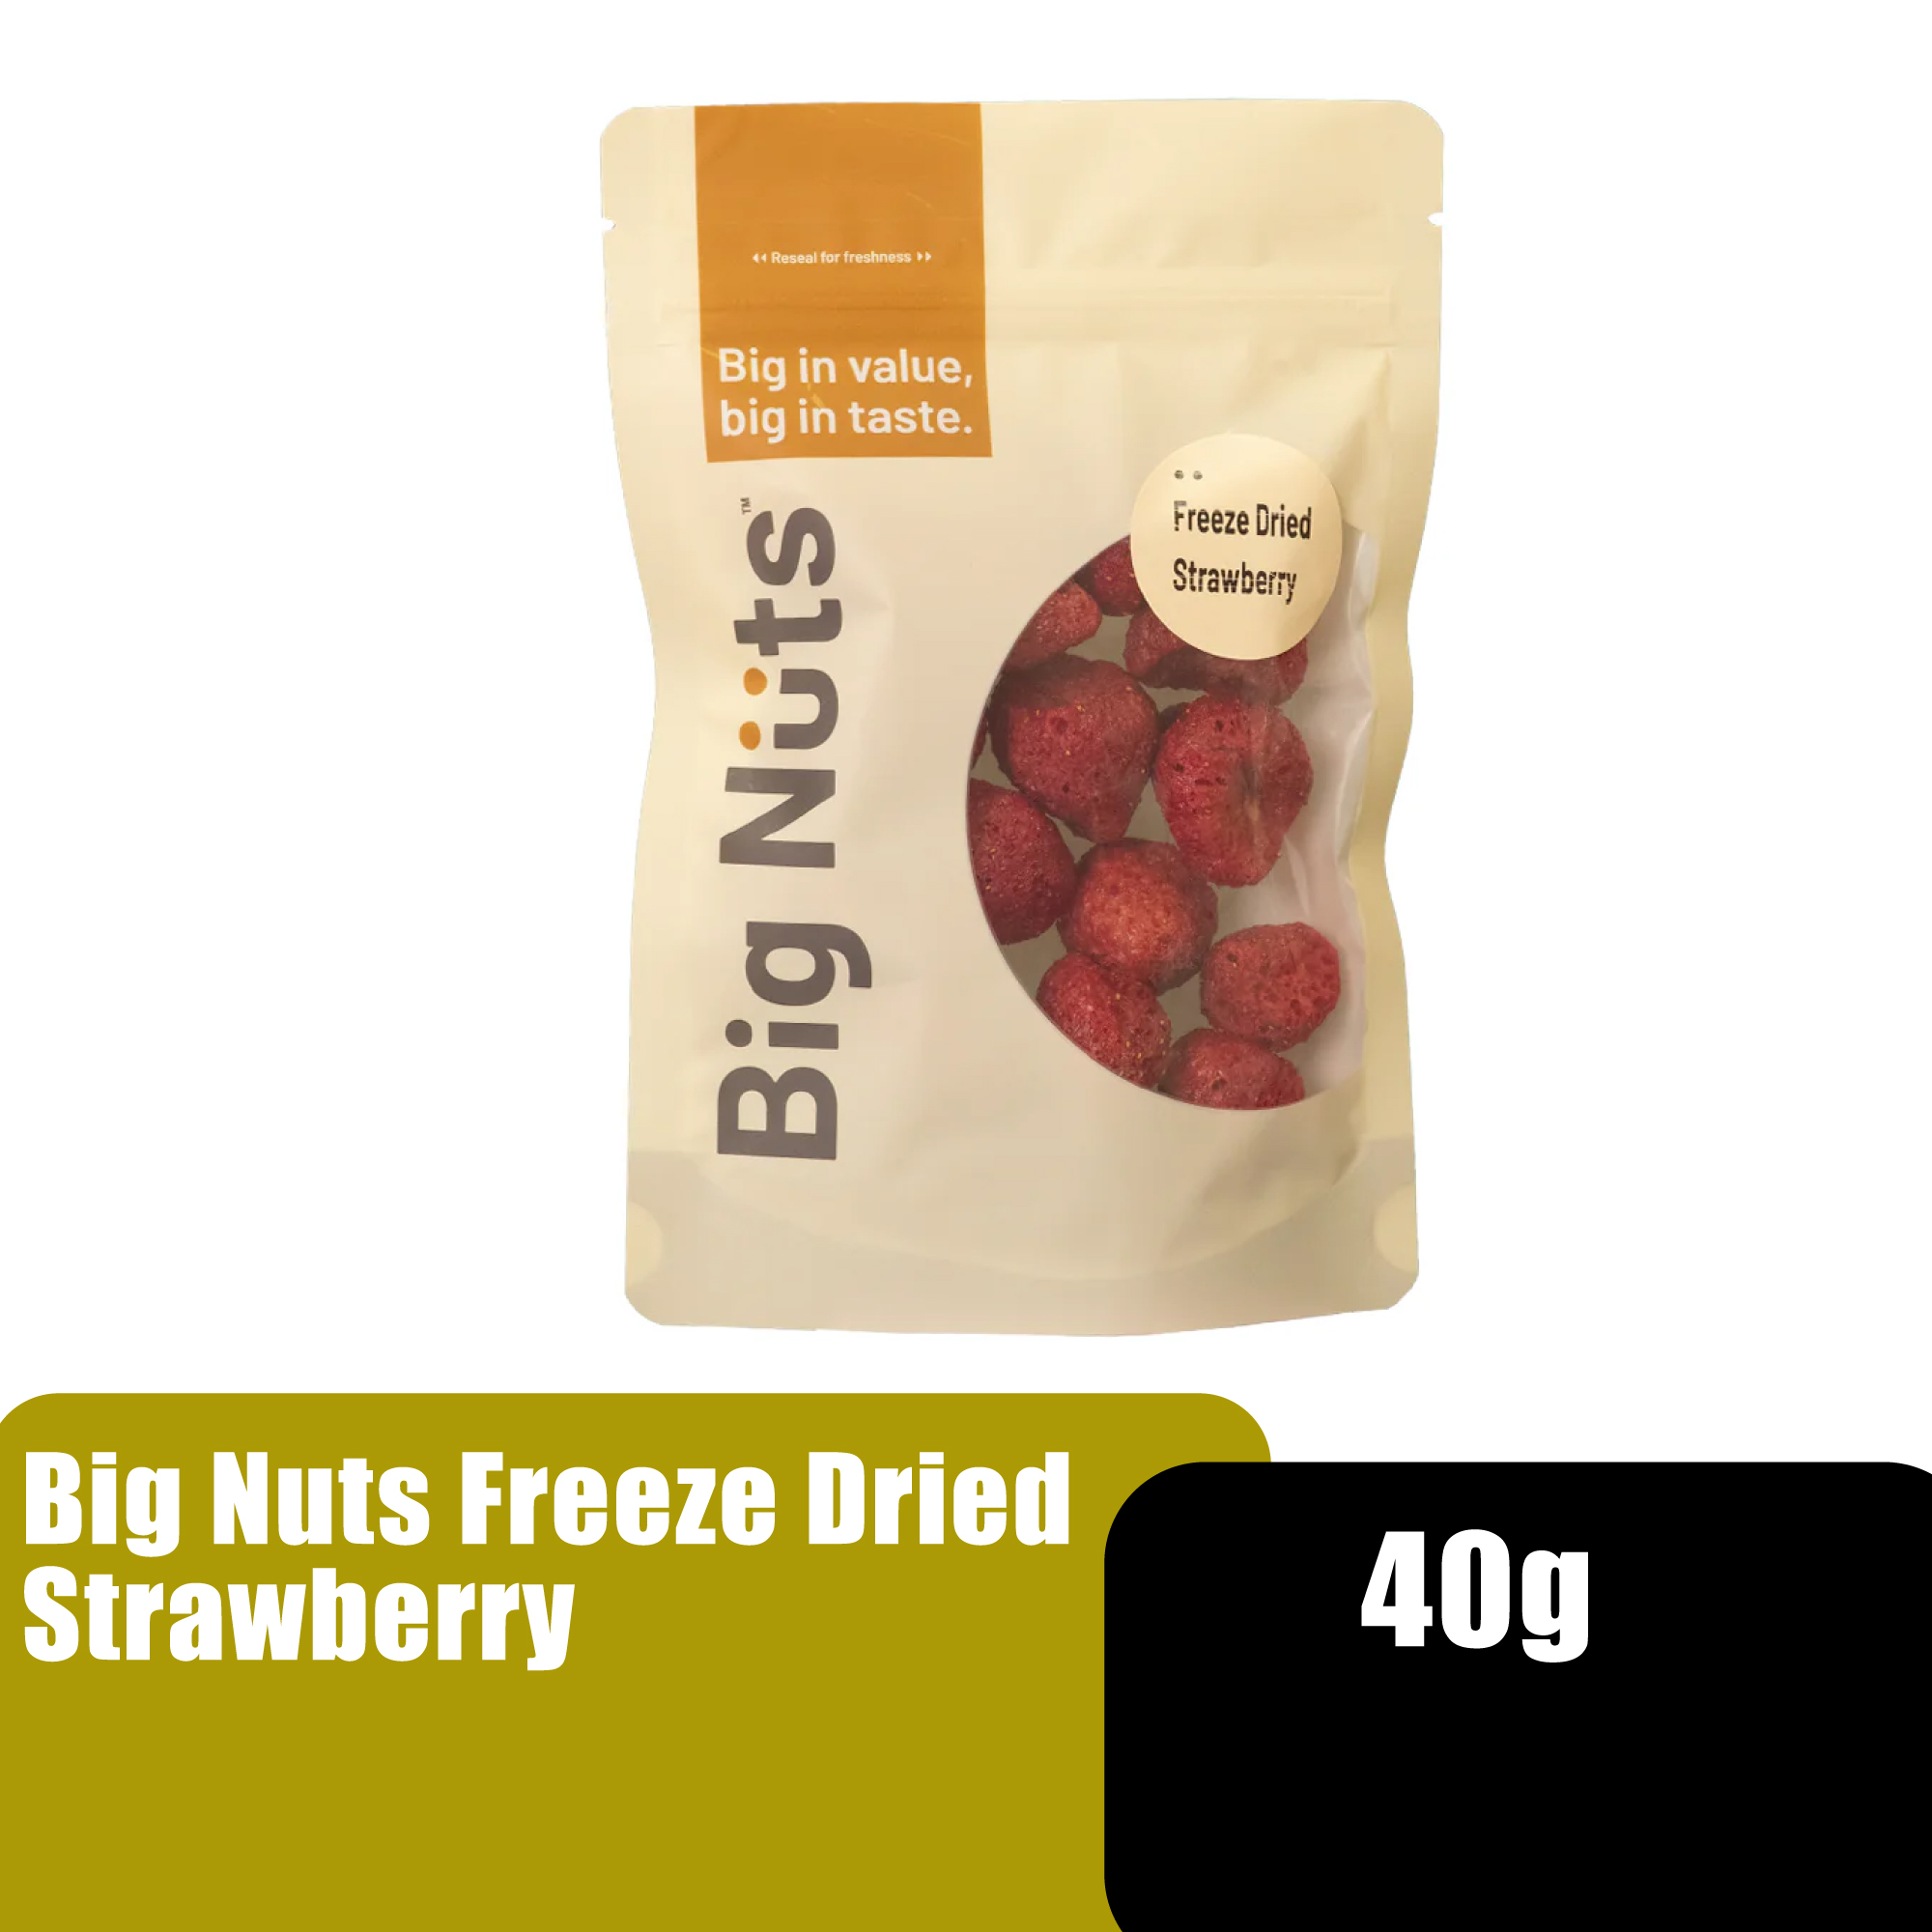 BIG NUTS FREEZE FRIED STRAWBERRY 60G ###